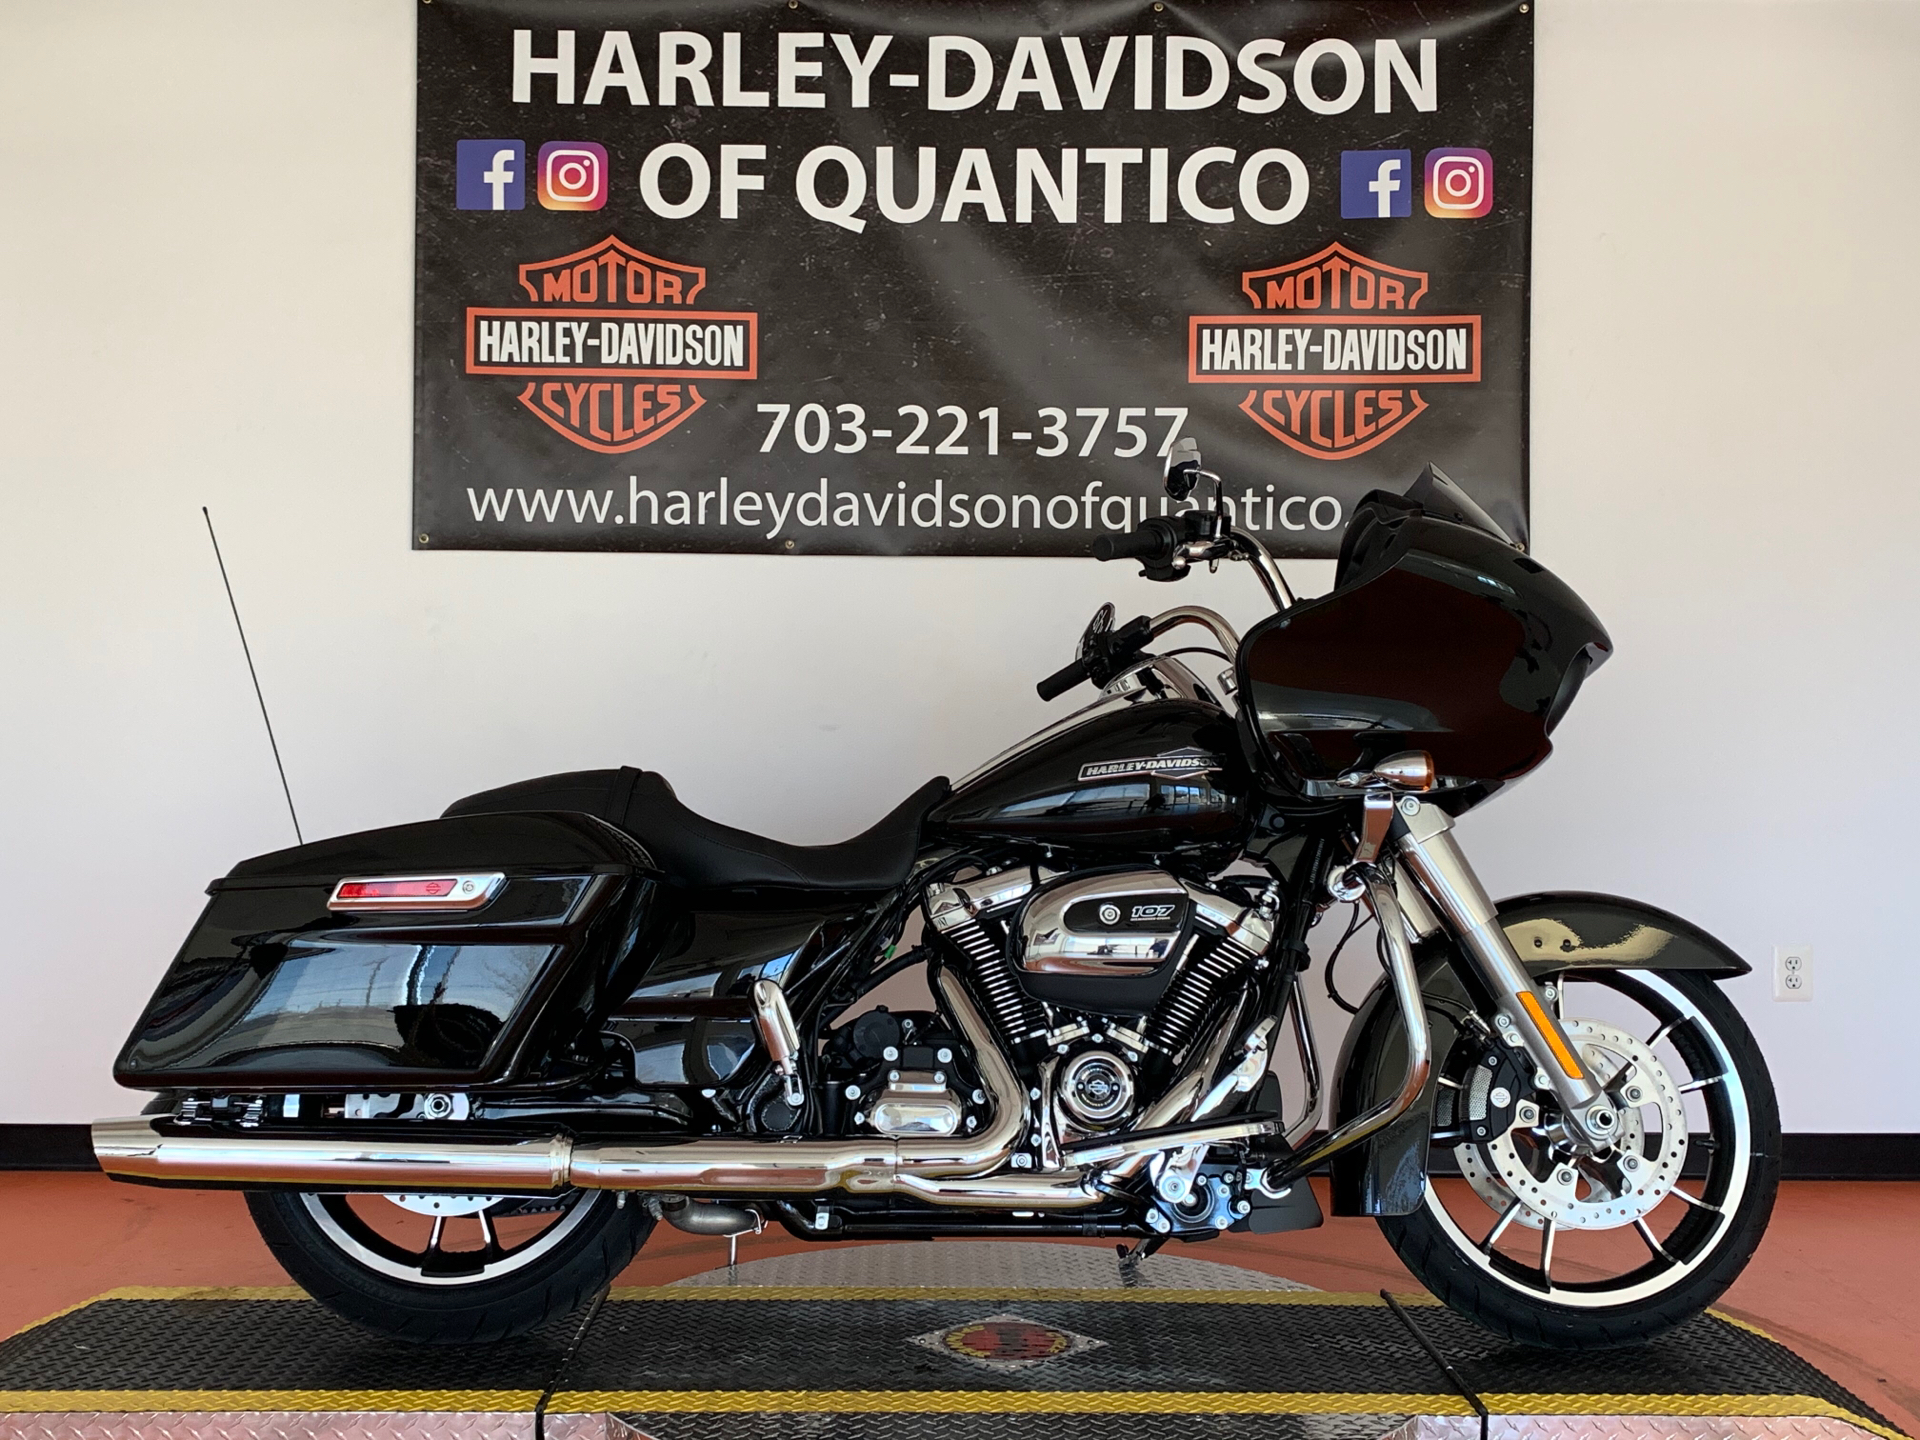 New 2021 Harley Davidson Road Glide Motorcycles In Fredericksburg Va 601561 Black